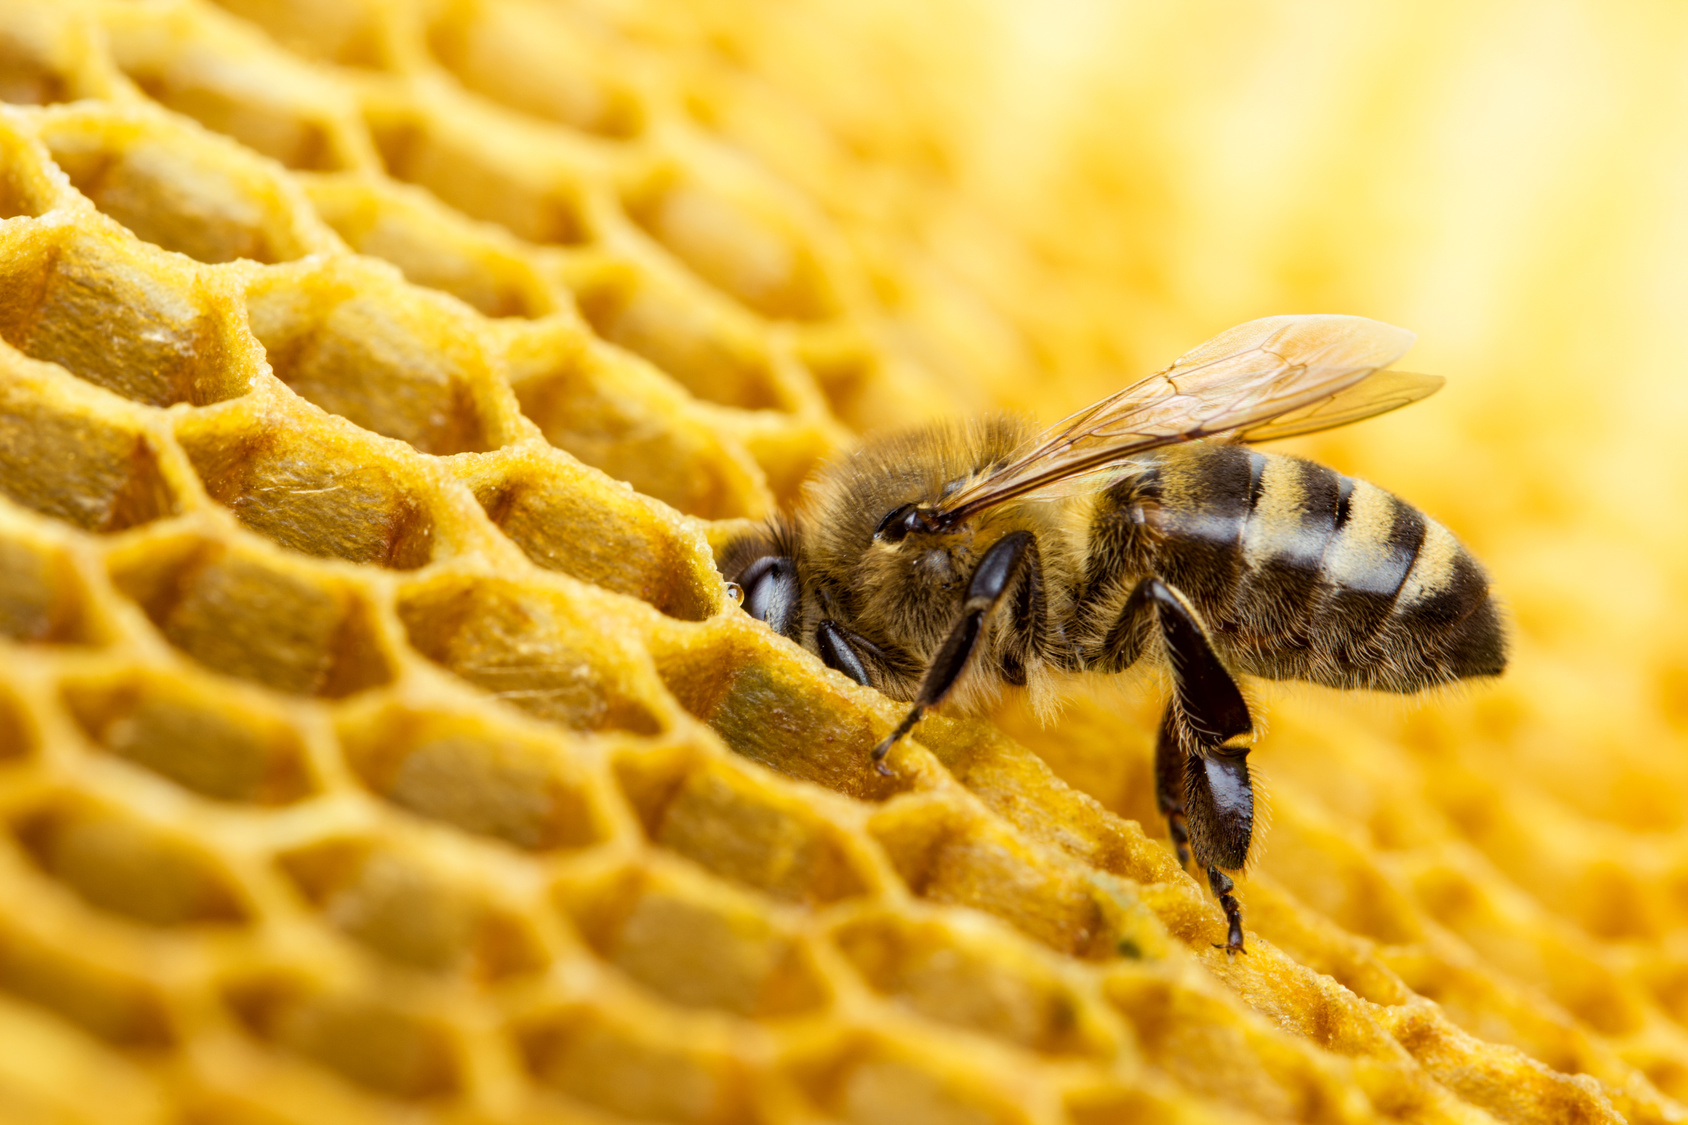 provedba intervencija u sektoru pčelarstva